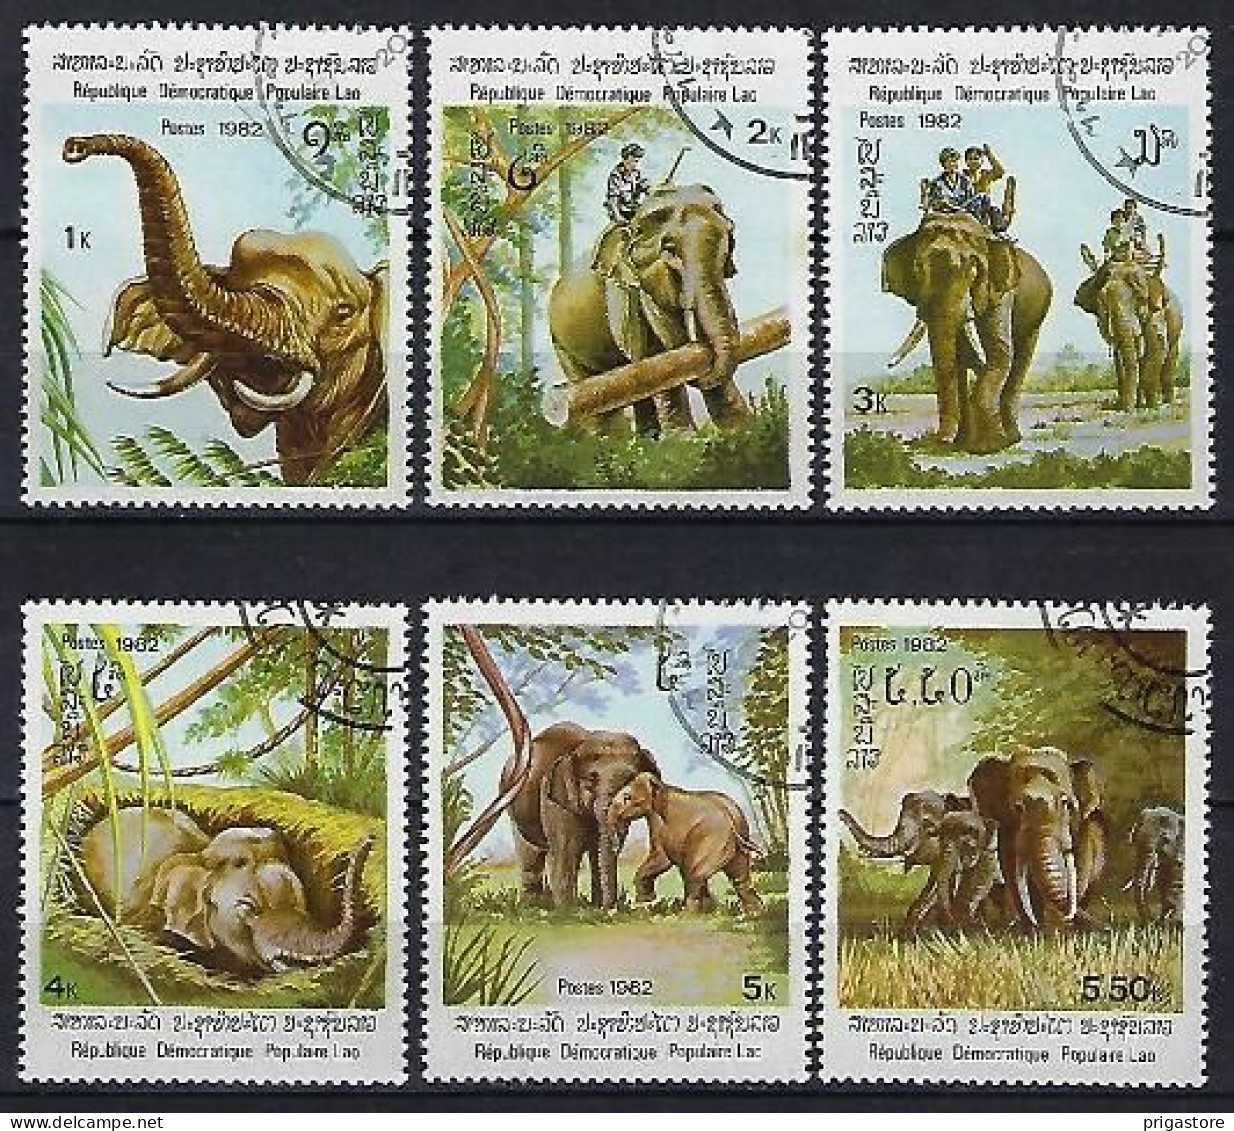 Eléphants Laos 1982 (604) Yvert 376 à 381 Oblitérés Used - Eléphants